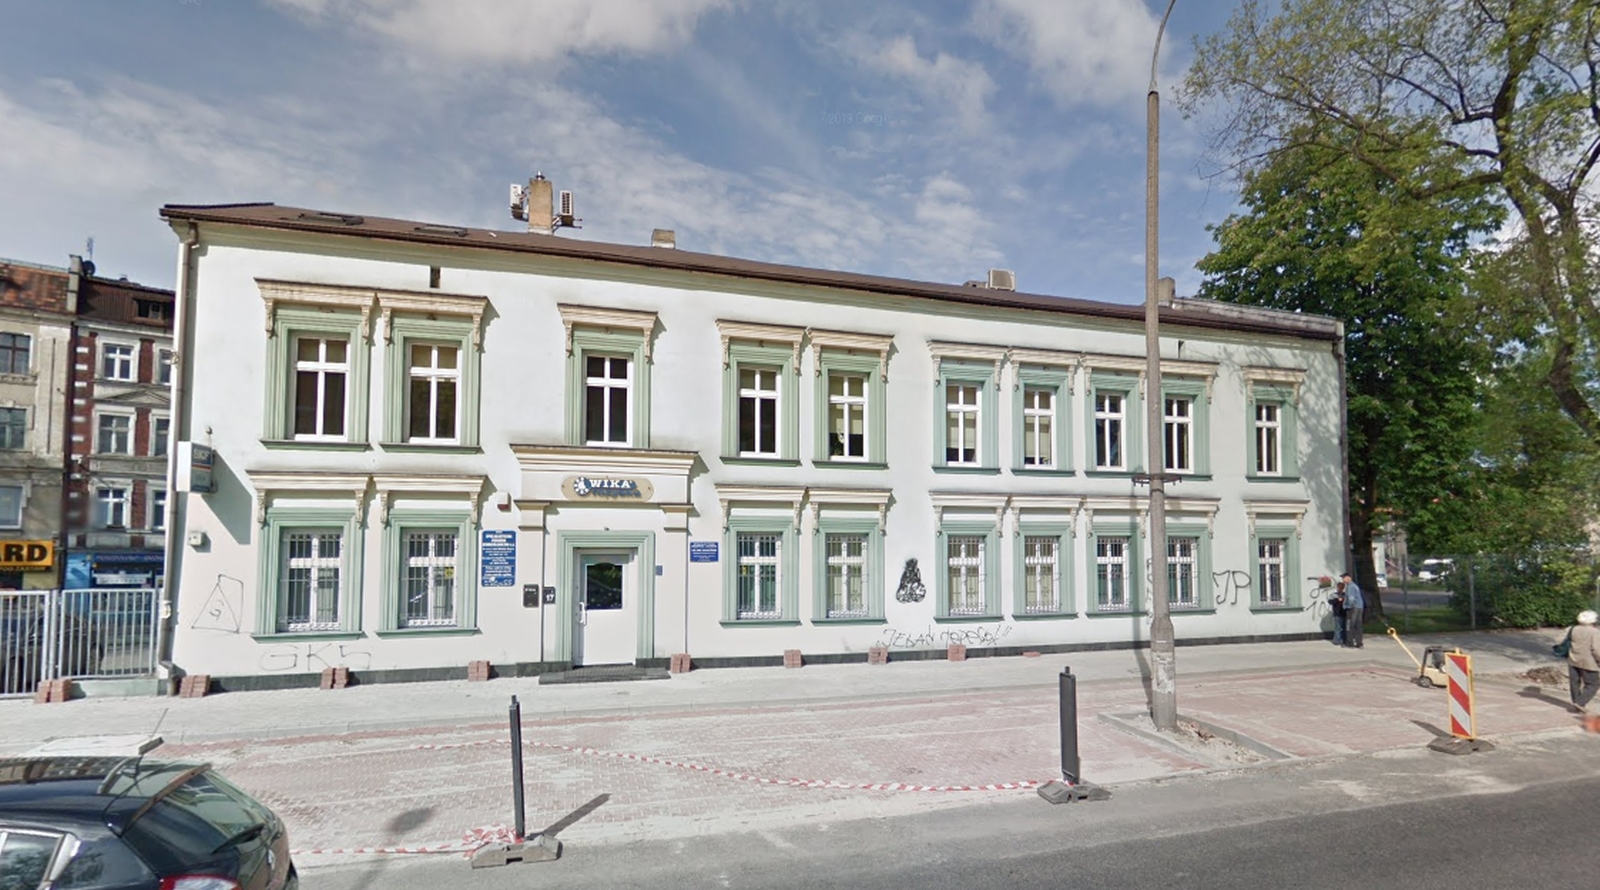 Wyższa Szkoła Bezpieczeństwa - Wydział Studiów Społecznych w Gliwicach